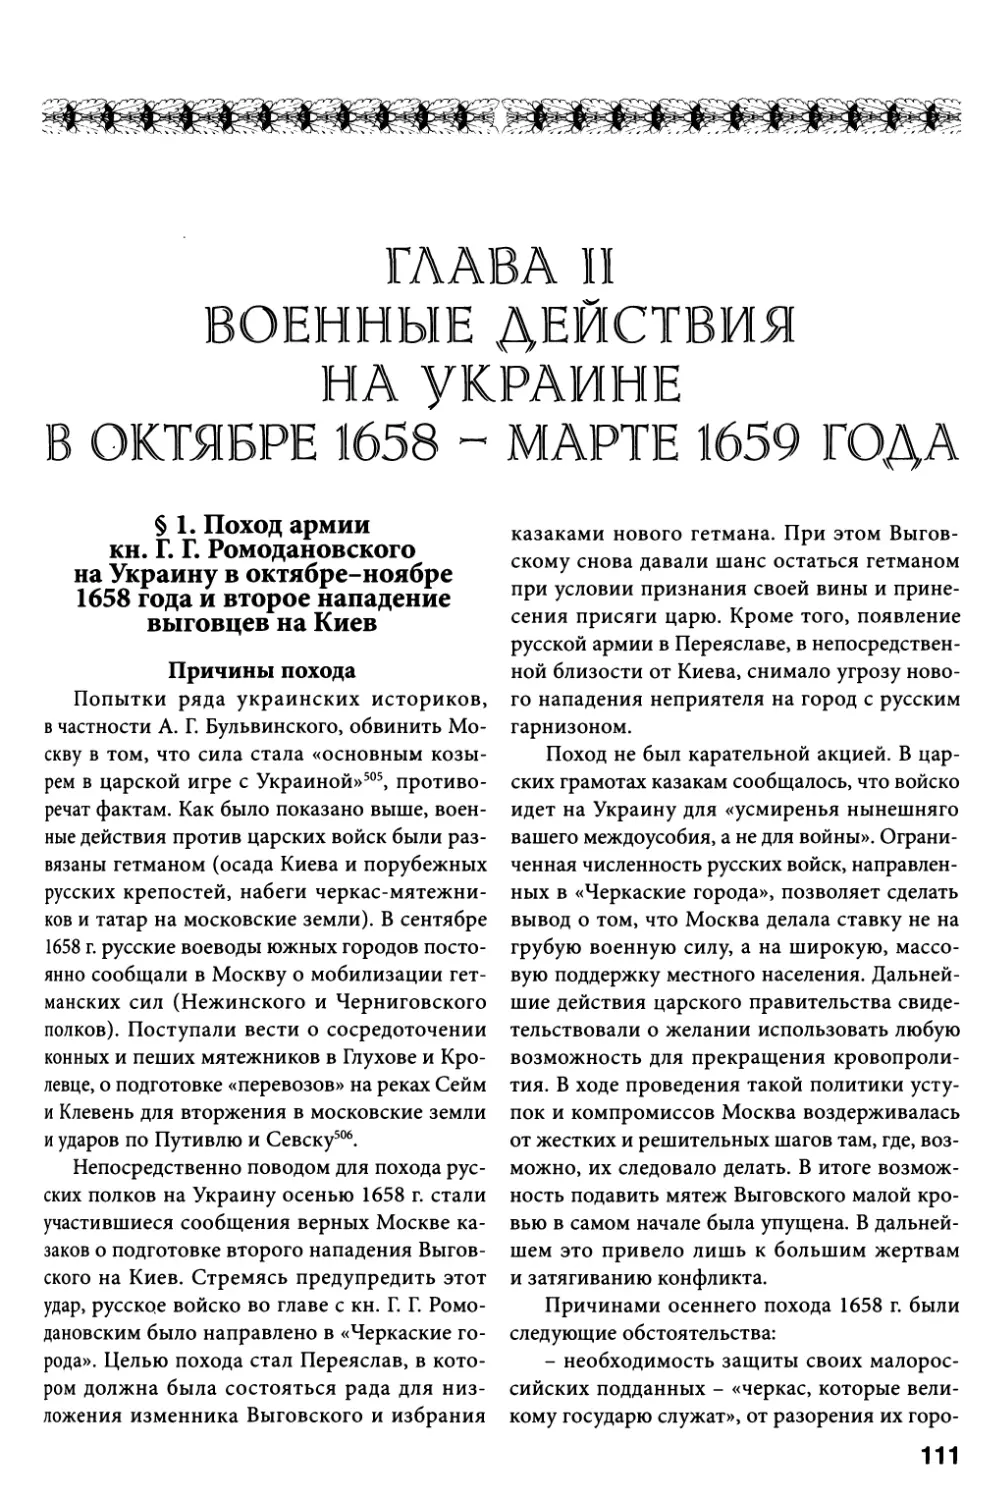 Глава II. Военные действия на Украине в октябре 1658 – марте 1659 года
§ 1. Поход армии кн. Г.Г. Ромодановского на Украину в октябре-ноябре 1658 года и второе нападение выговцев на Киев